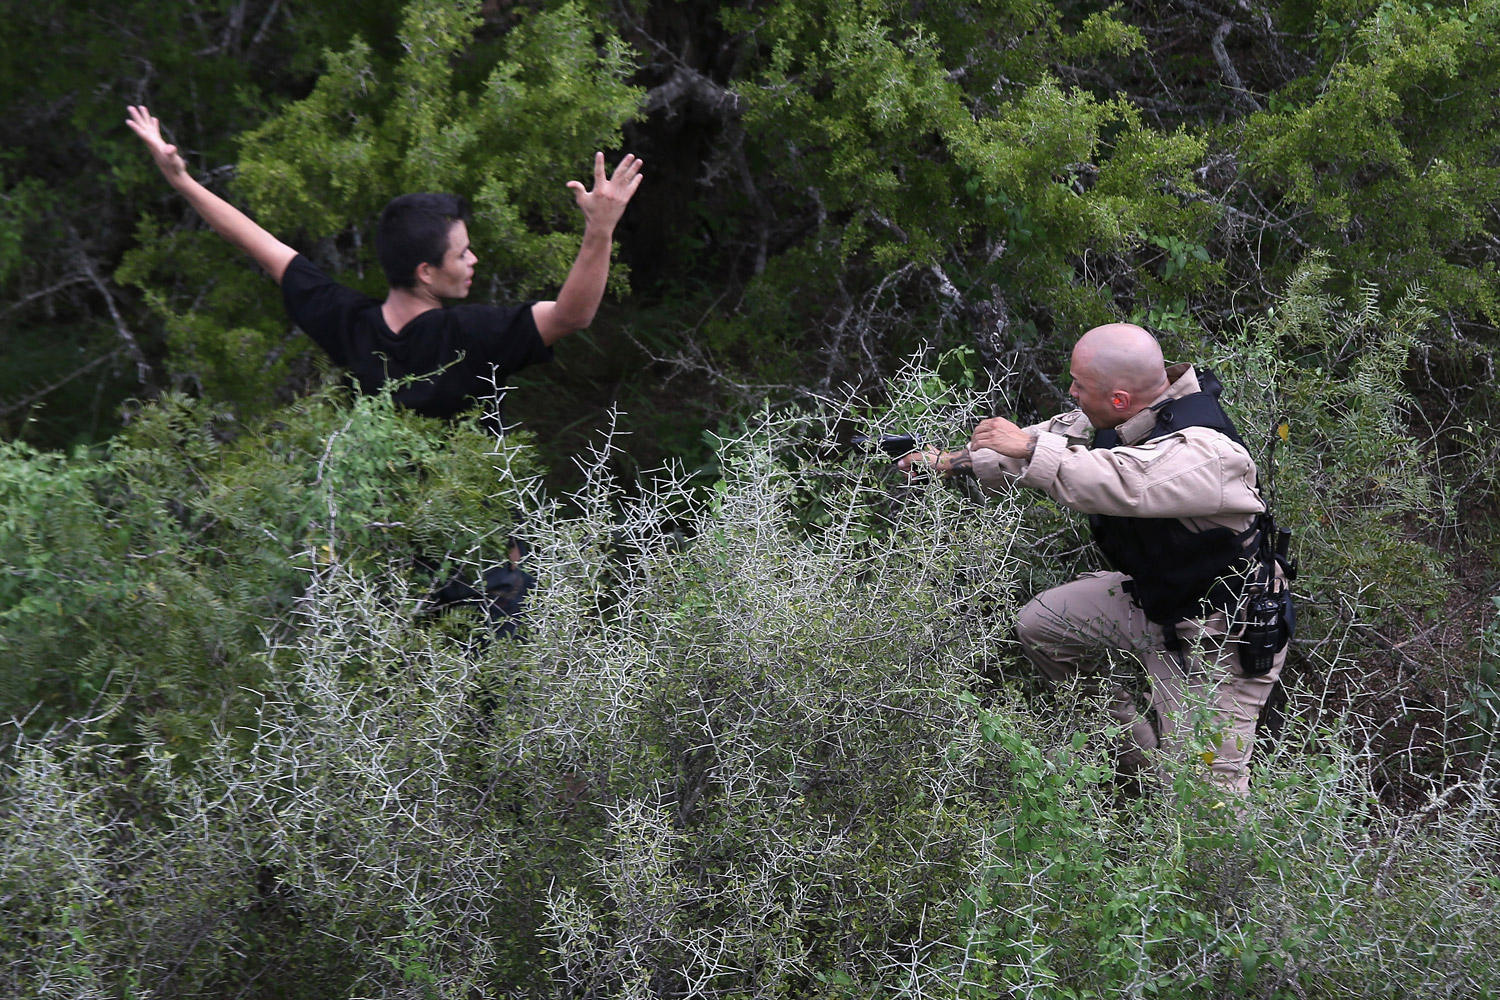 La Patrulla Fronteriza captura a un inmigrante ilegal a punta de pistola